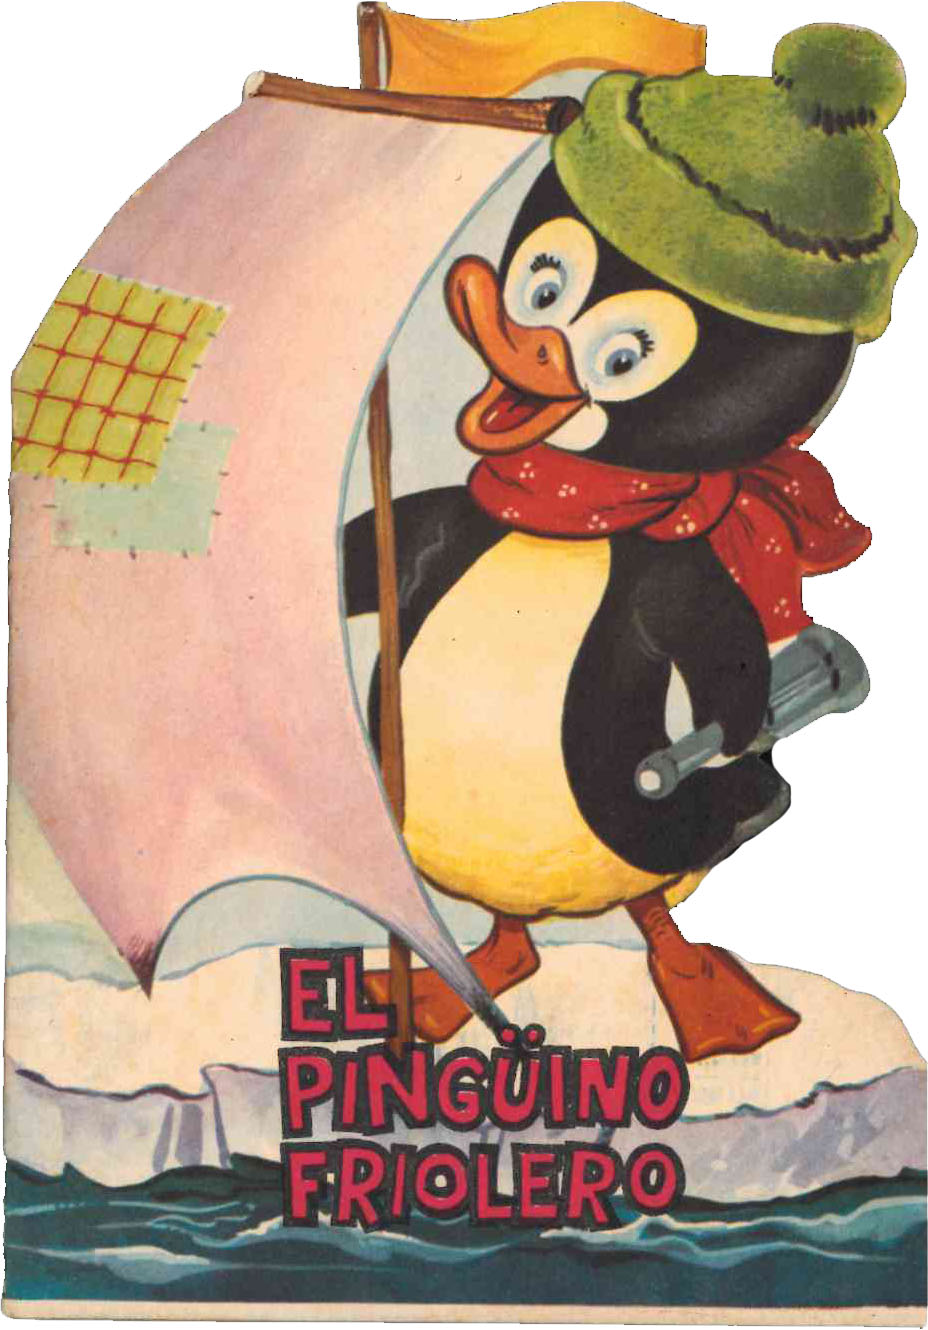 Cuento Troquelado El Pingüino Friolero. Ferma 1965